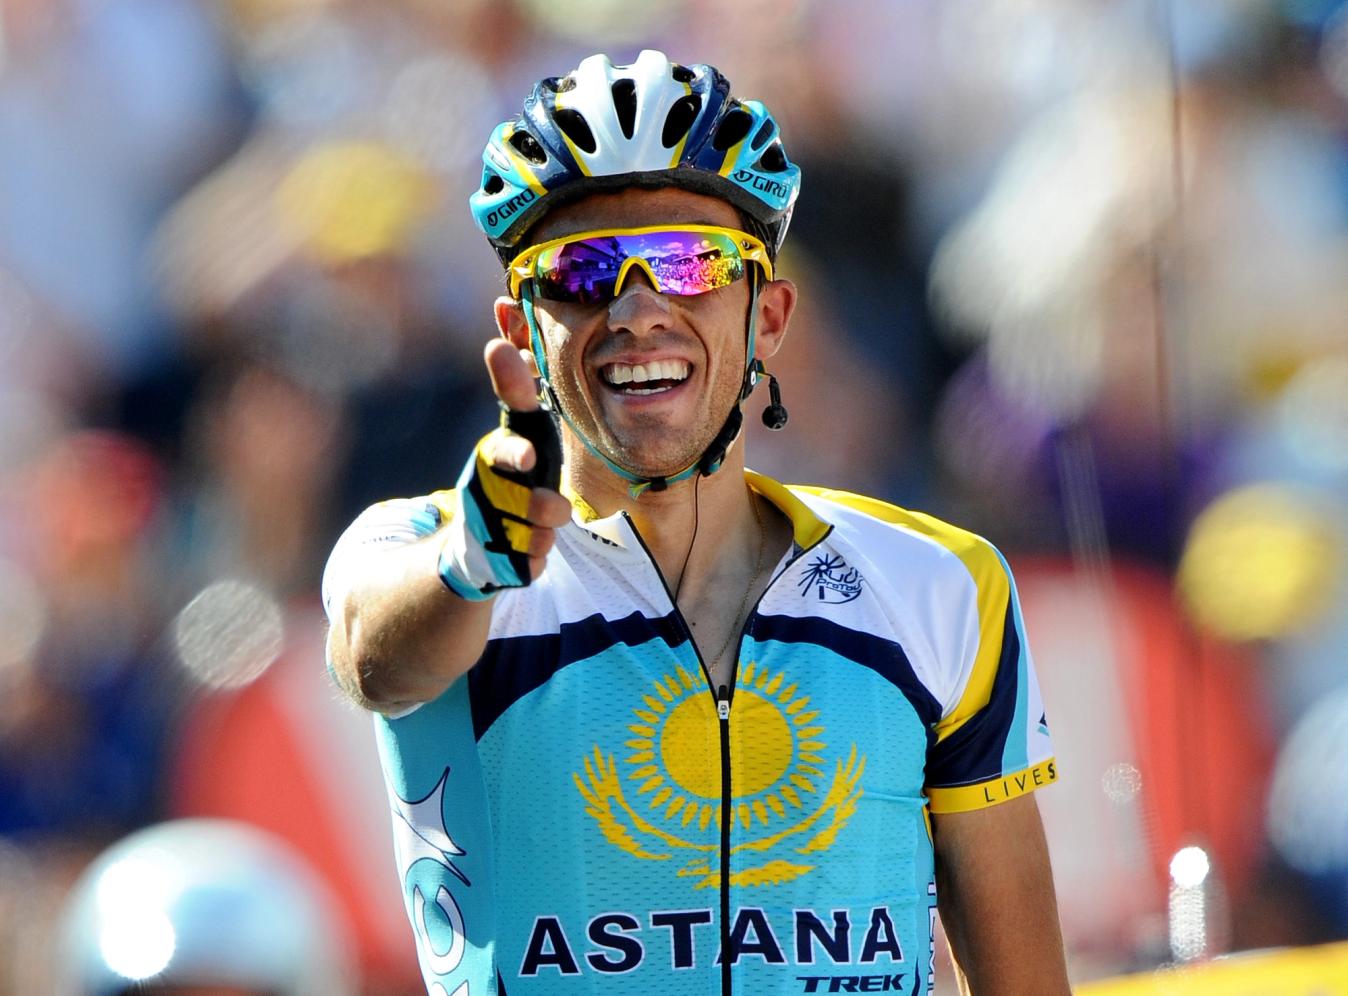 Alberto Contador celebrates with his signature salute